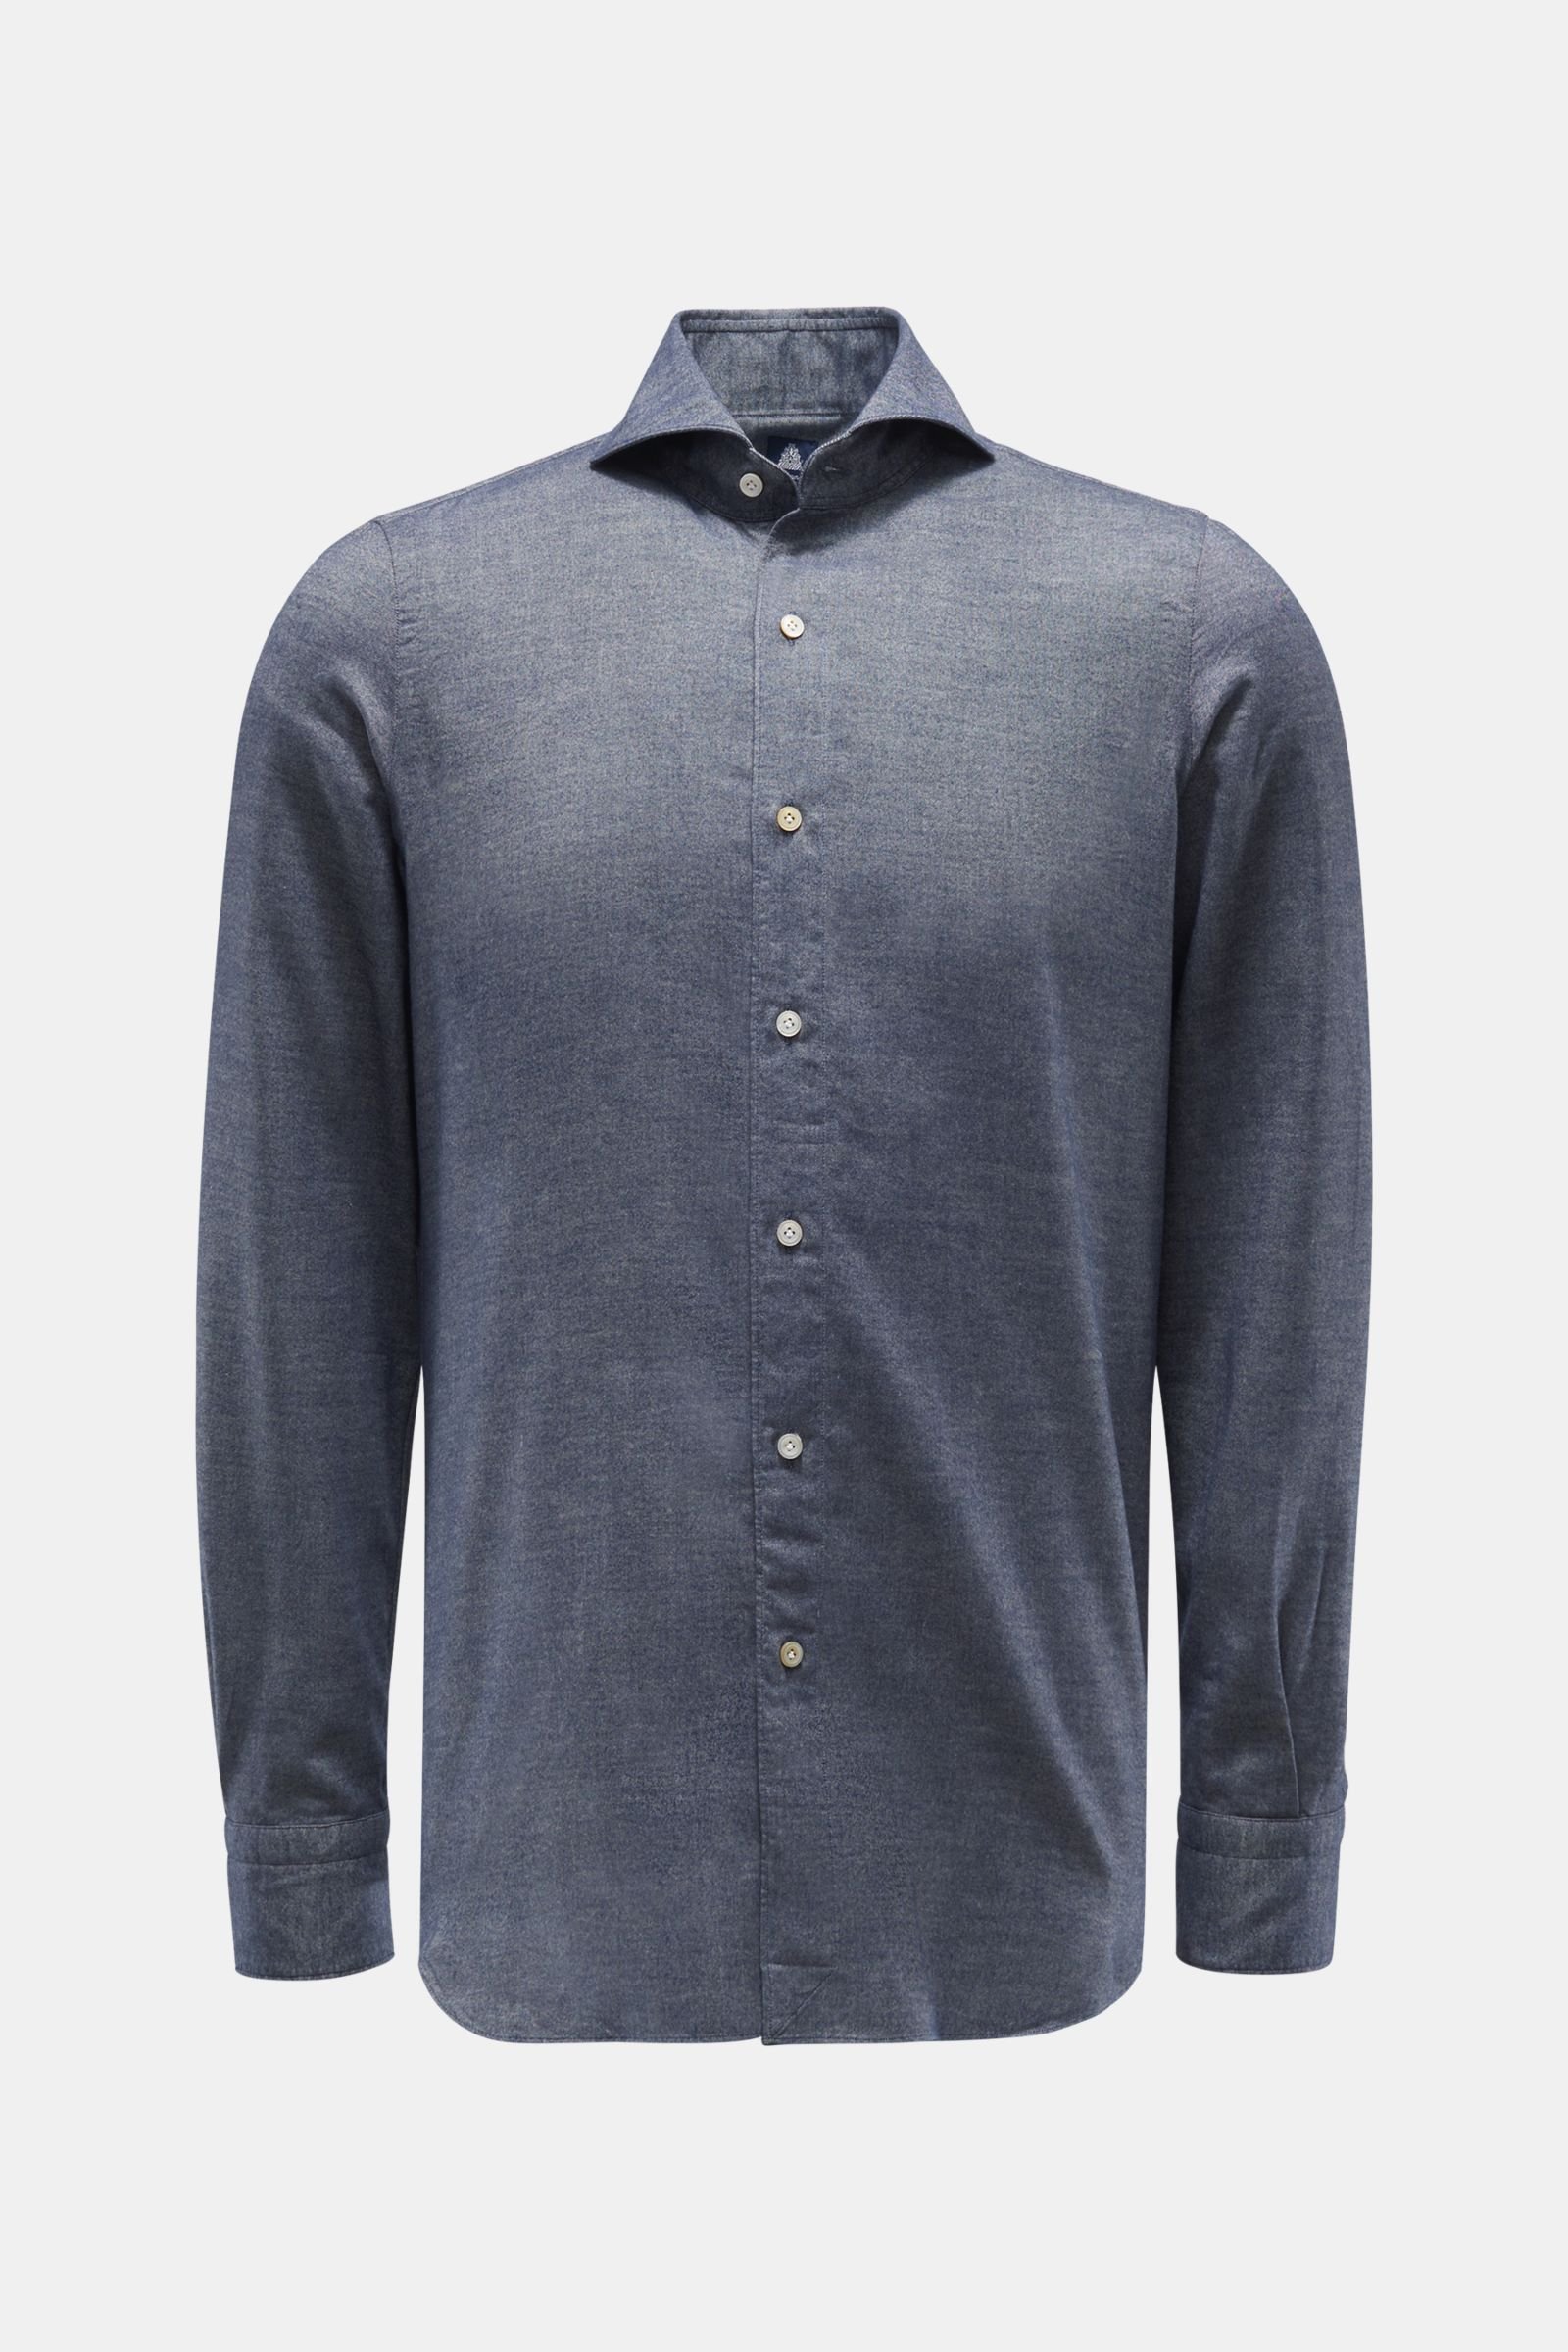 Flannel shirt 'Sergio Gaeta' shark collar grey-blue